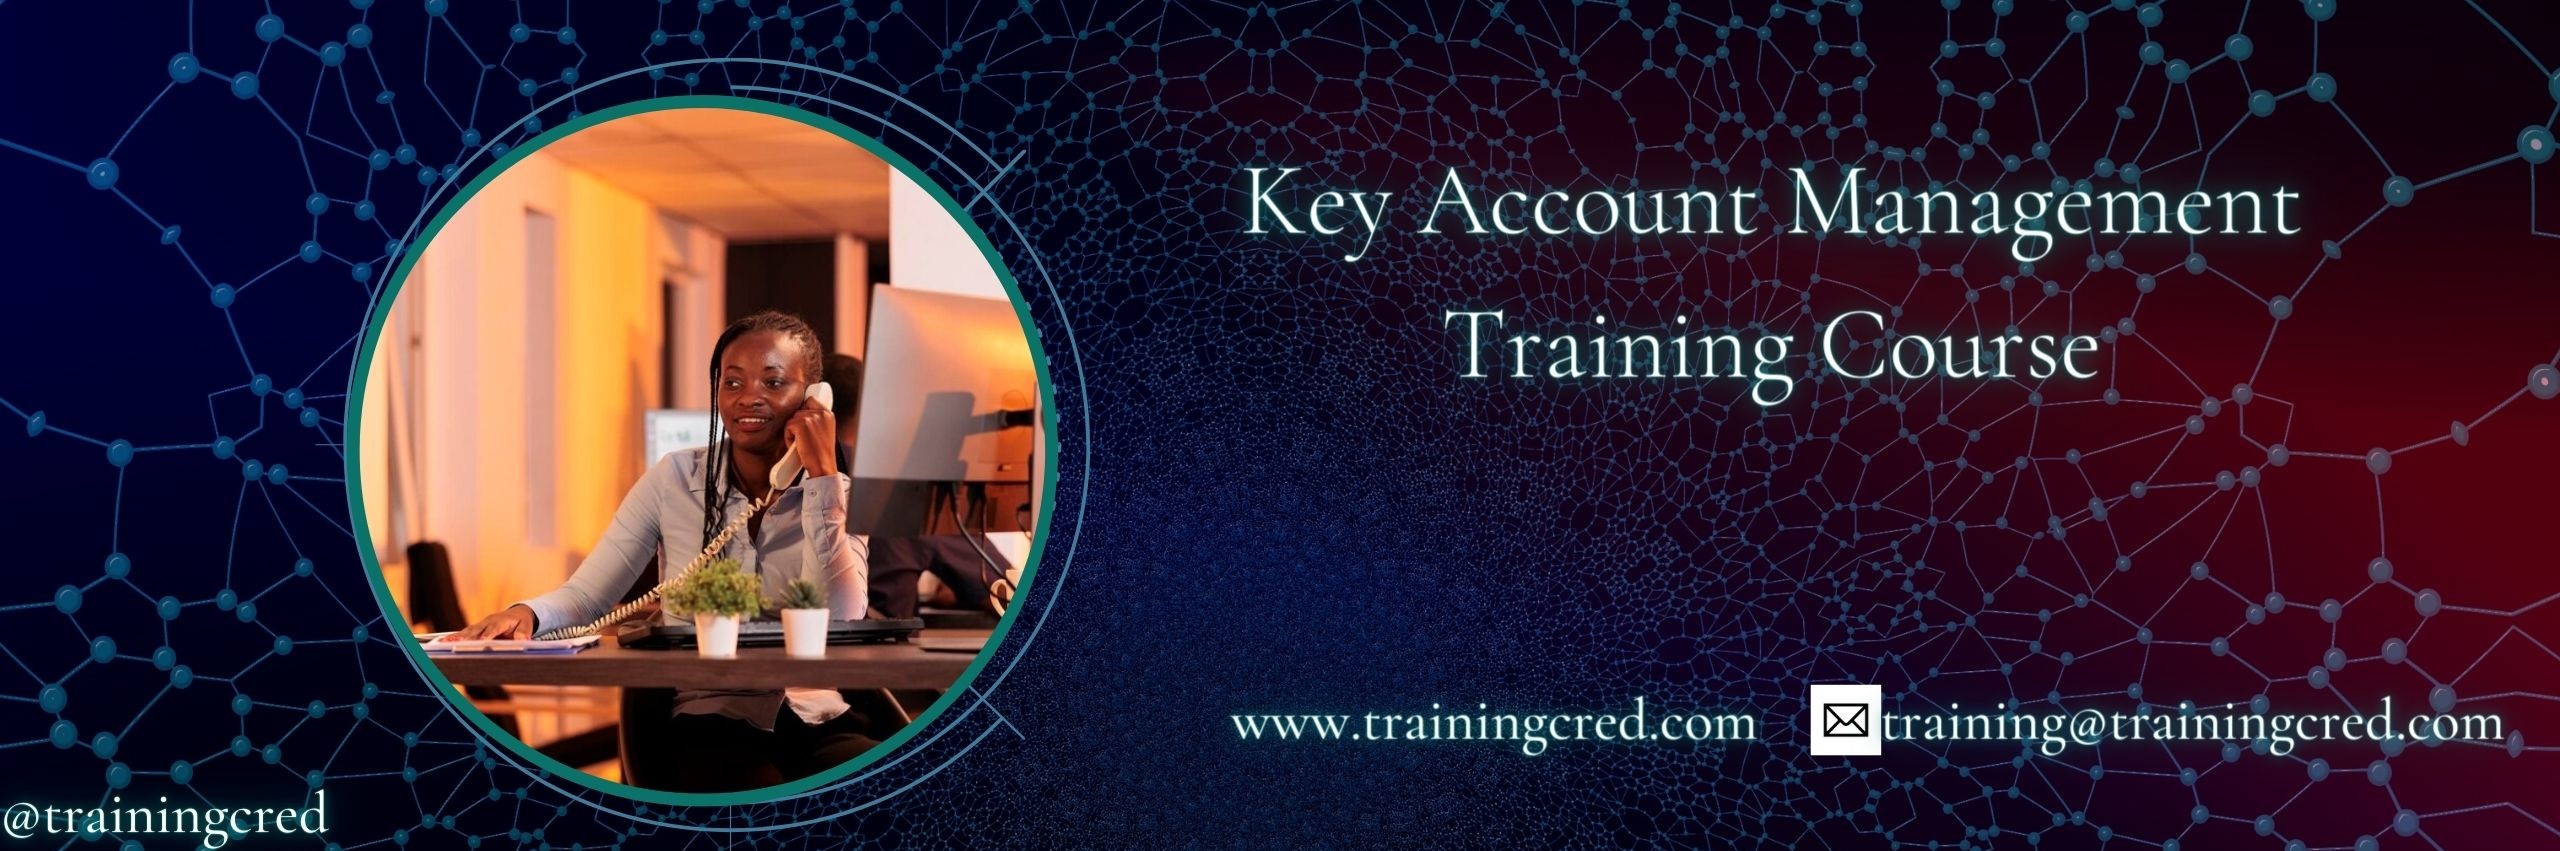 Key Account Management Training